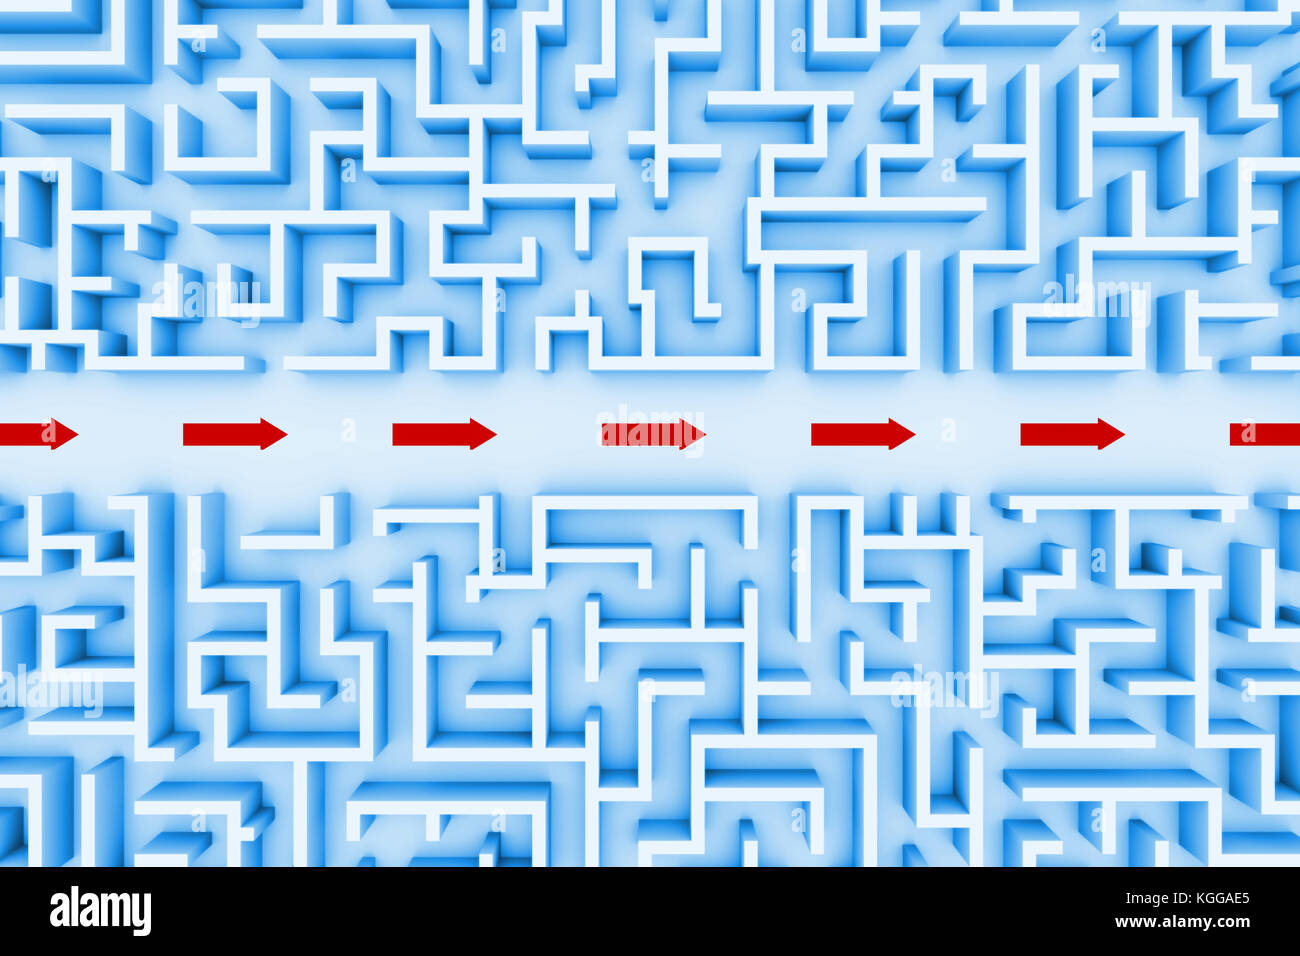 Blu enorme struttura a labirinto, rosso le frecce che mostrano la scorciatoia attraverso la parte centrale del giardino labirinto (3d'illustrazione) Foto Stock